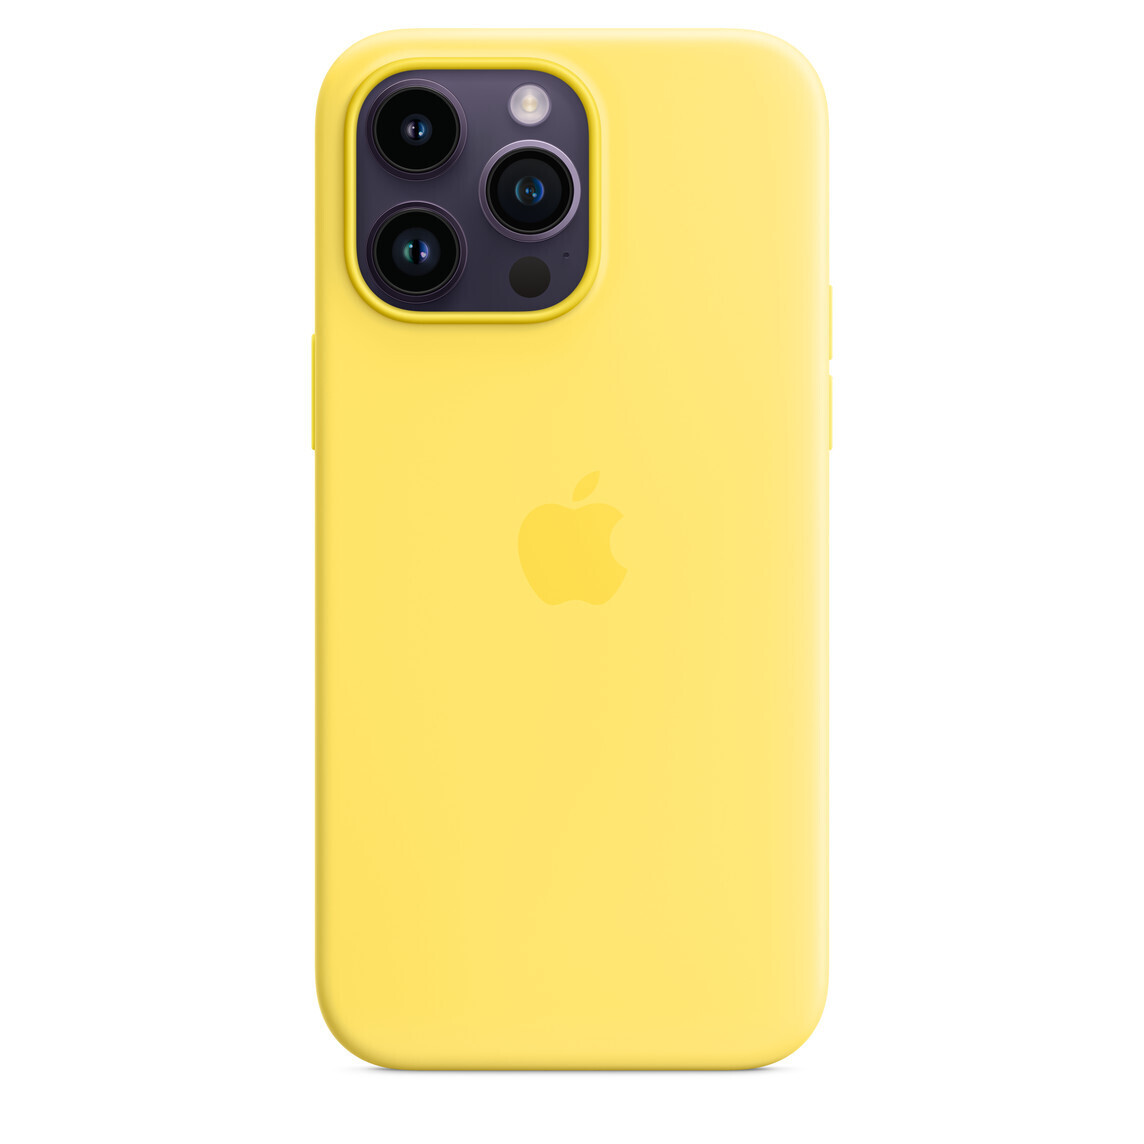  گارد سیلیکونی آیفون 11 Pro Max رنگ زرد 